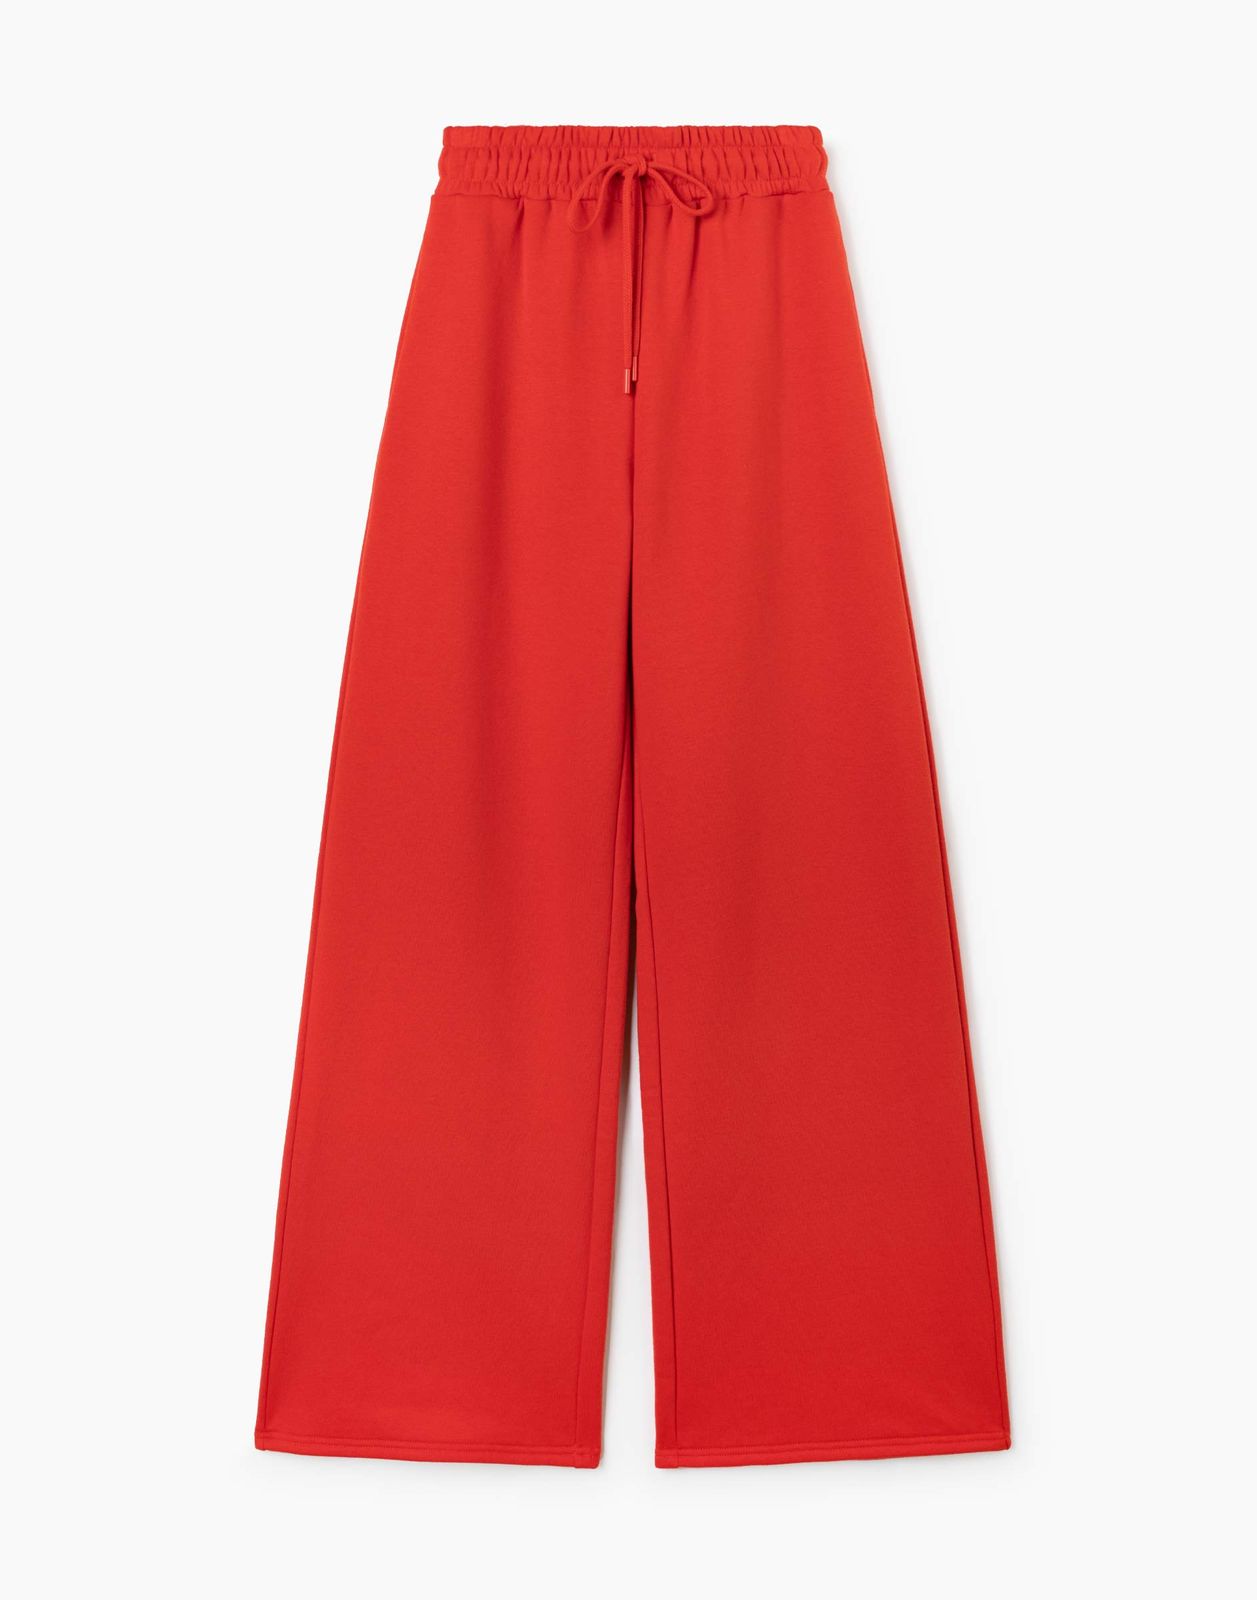 Спортивные брюки женские Gloria Jeans GAC020946 красные S/164 (40-42)